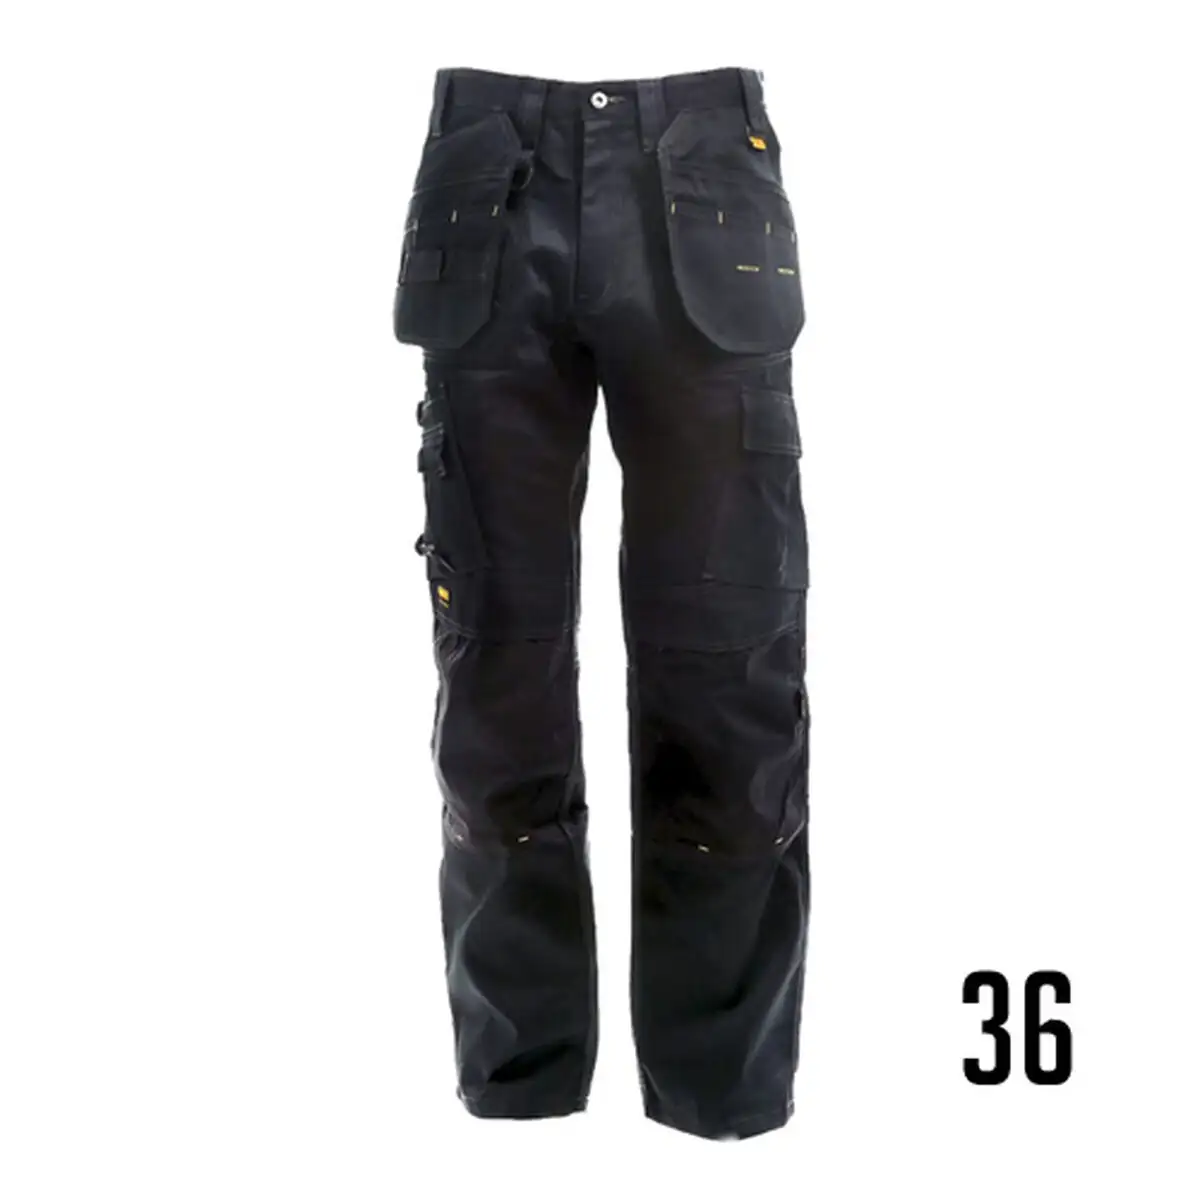 Pantalons de securite dewalt tradesman 40 noir gris_4525. DIAYTAR SENEGAL - L'Art de Vivre l'Élégance Accessible. Parcourez notre gamme variée et choisissez des produits qui ajoutent une touche de sophistication à votre style.